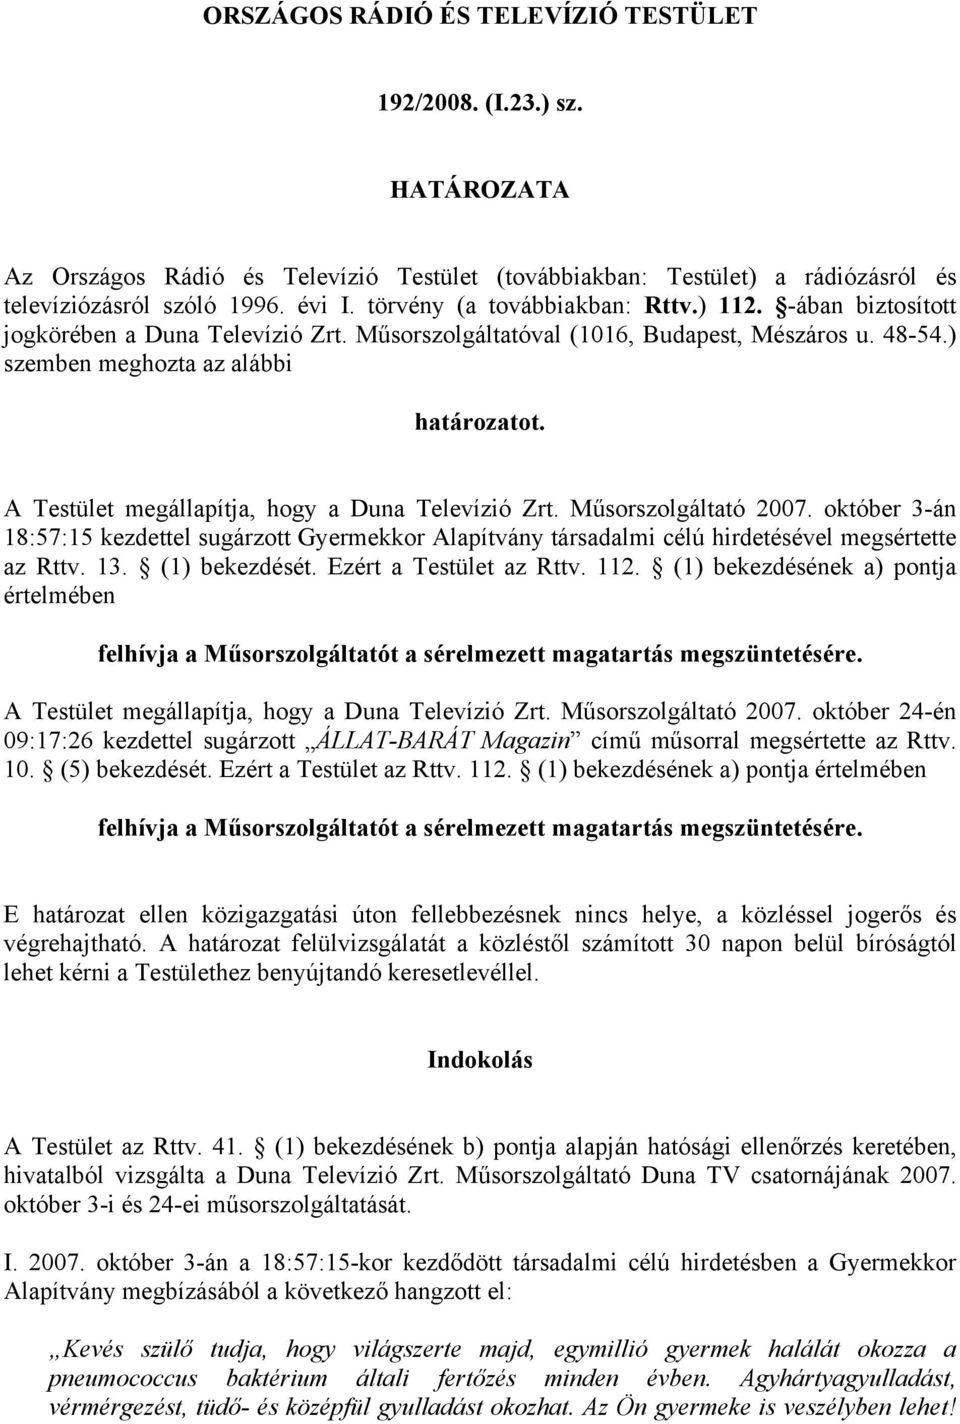 A Testület megállapítja, hogy a Duna Televízió Zrt. Műsorszolgáltató 2007. október 3-án 18:57:15 kezdettel sugárzott Gyermekkor Alapítvány társadalmi célú hirdetésével megsértette az Rttv. 13.